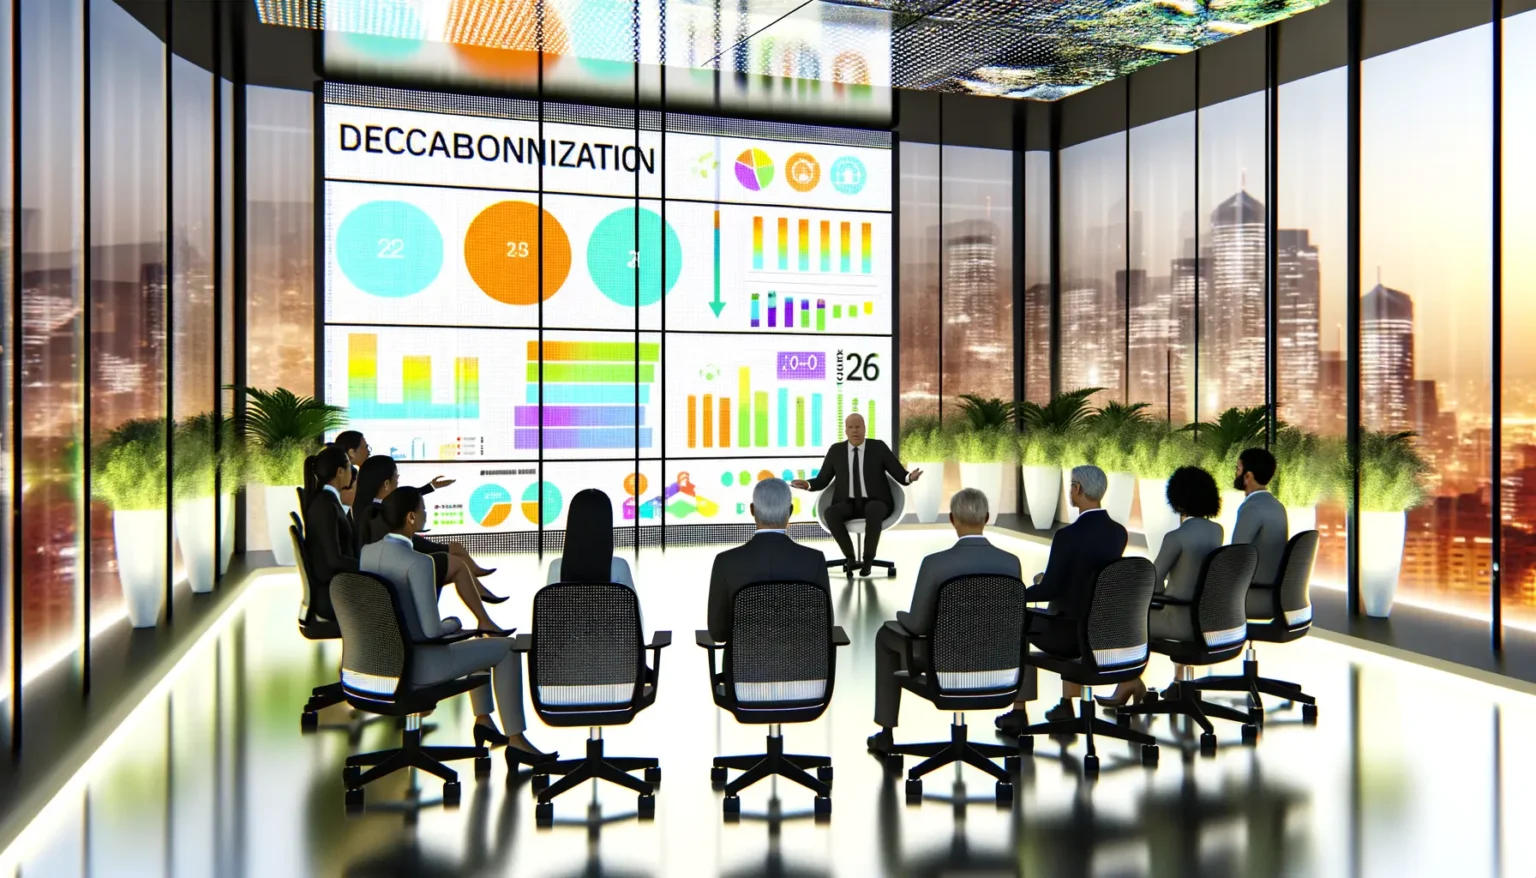 Eine Gruppe von Geschäftsleuten sitzt in einem modern gestalteten Konferenzraum mit Panoramablick auf eine Stadtsilhouette bei Sonnenuntergang und betrachtet eine Präsentation mit bunten Grafiken und dem Wort "DECCABONNIZATION" auf einem großen Bildschirm, während ein Redner die Präsentation leitet.